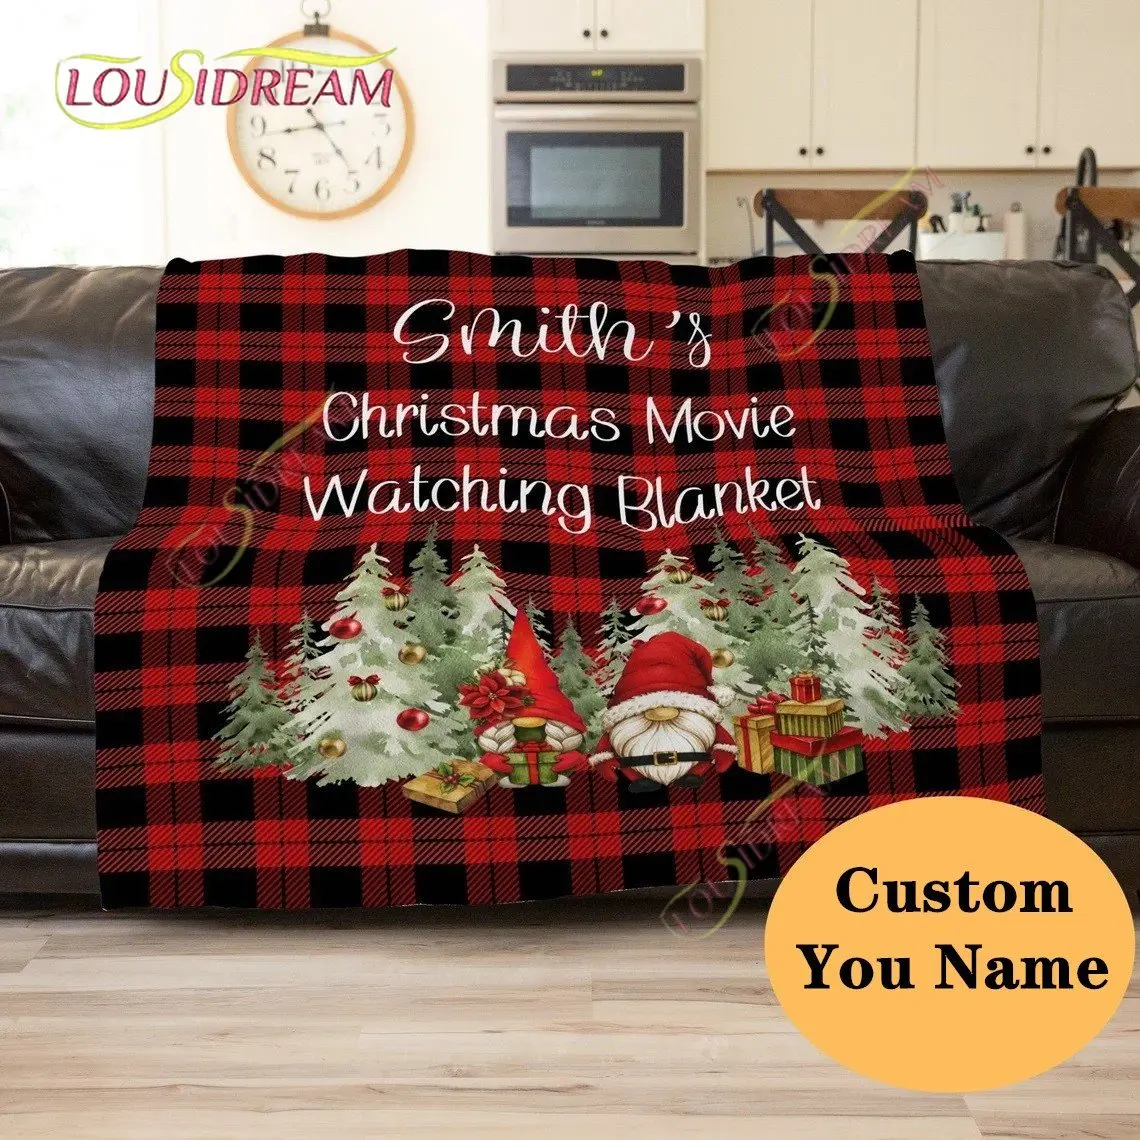 

Рождественское одеяло для просмотра фильмов, персонализированное рождественское одеяло-гном, подарки для нее, индивидуальное название, искусственное одеяло, Декор